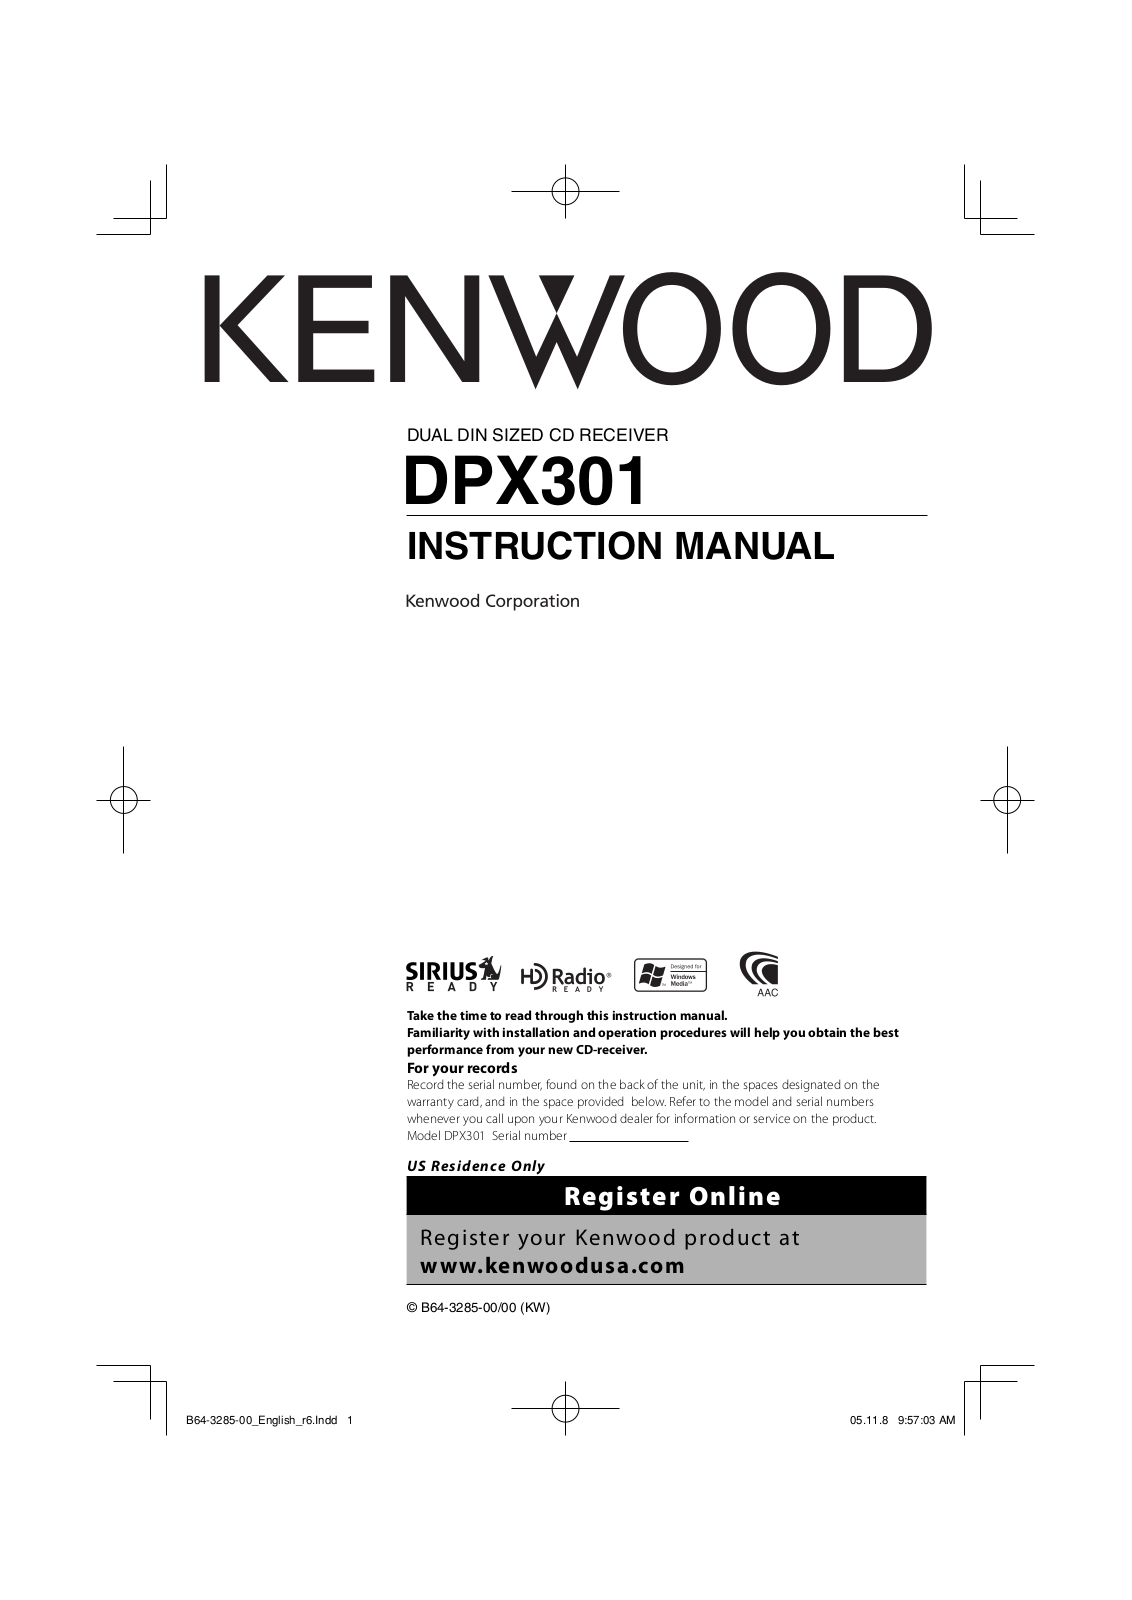 Kenwood DPX301 User Manual